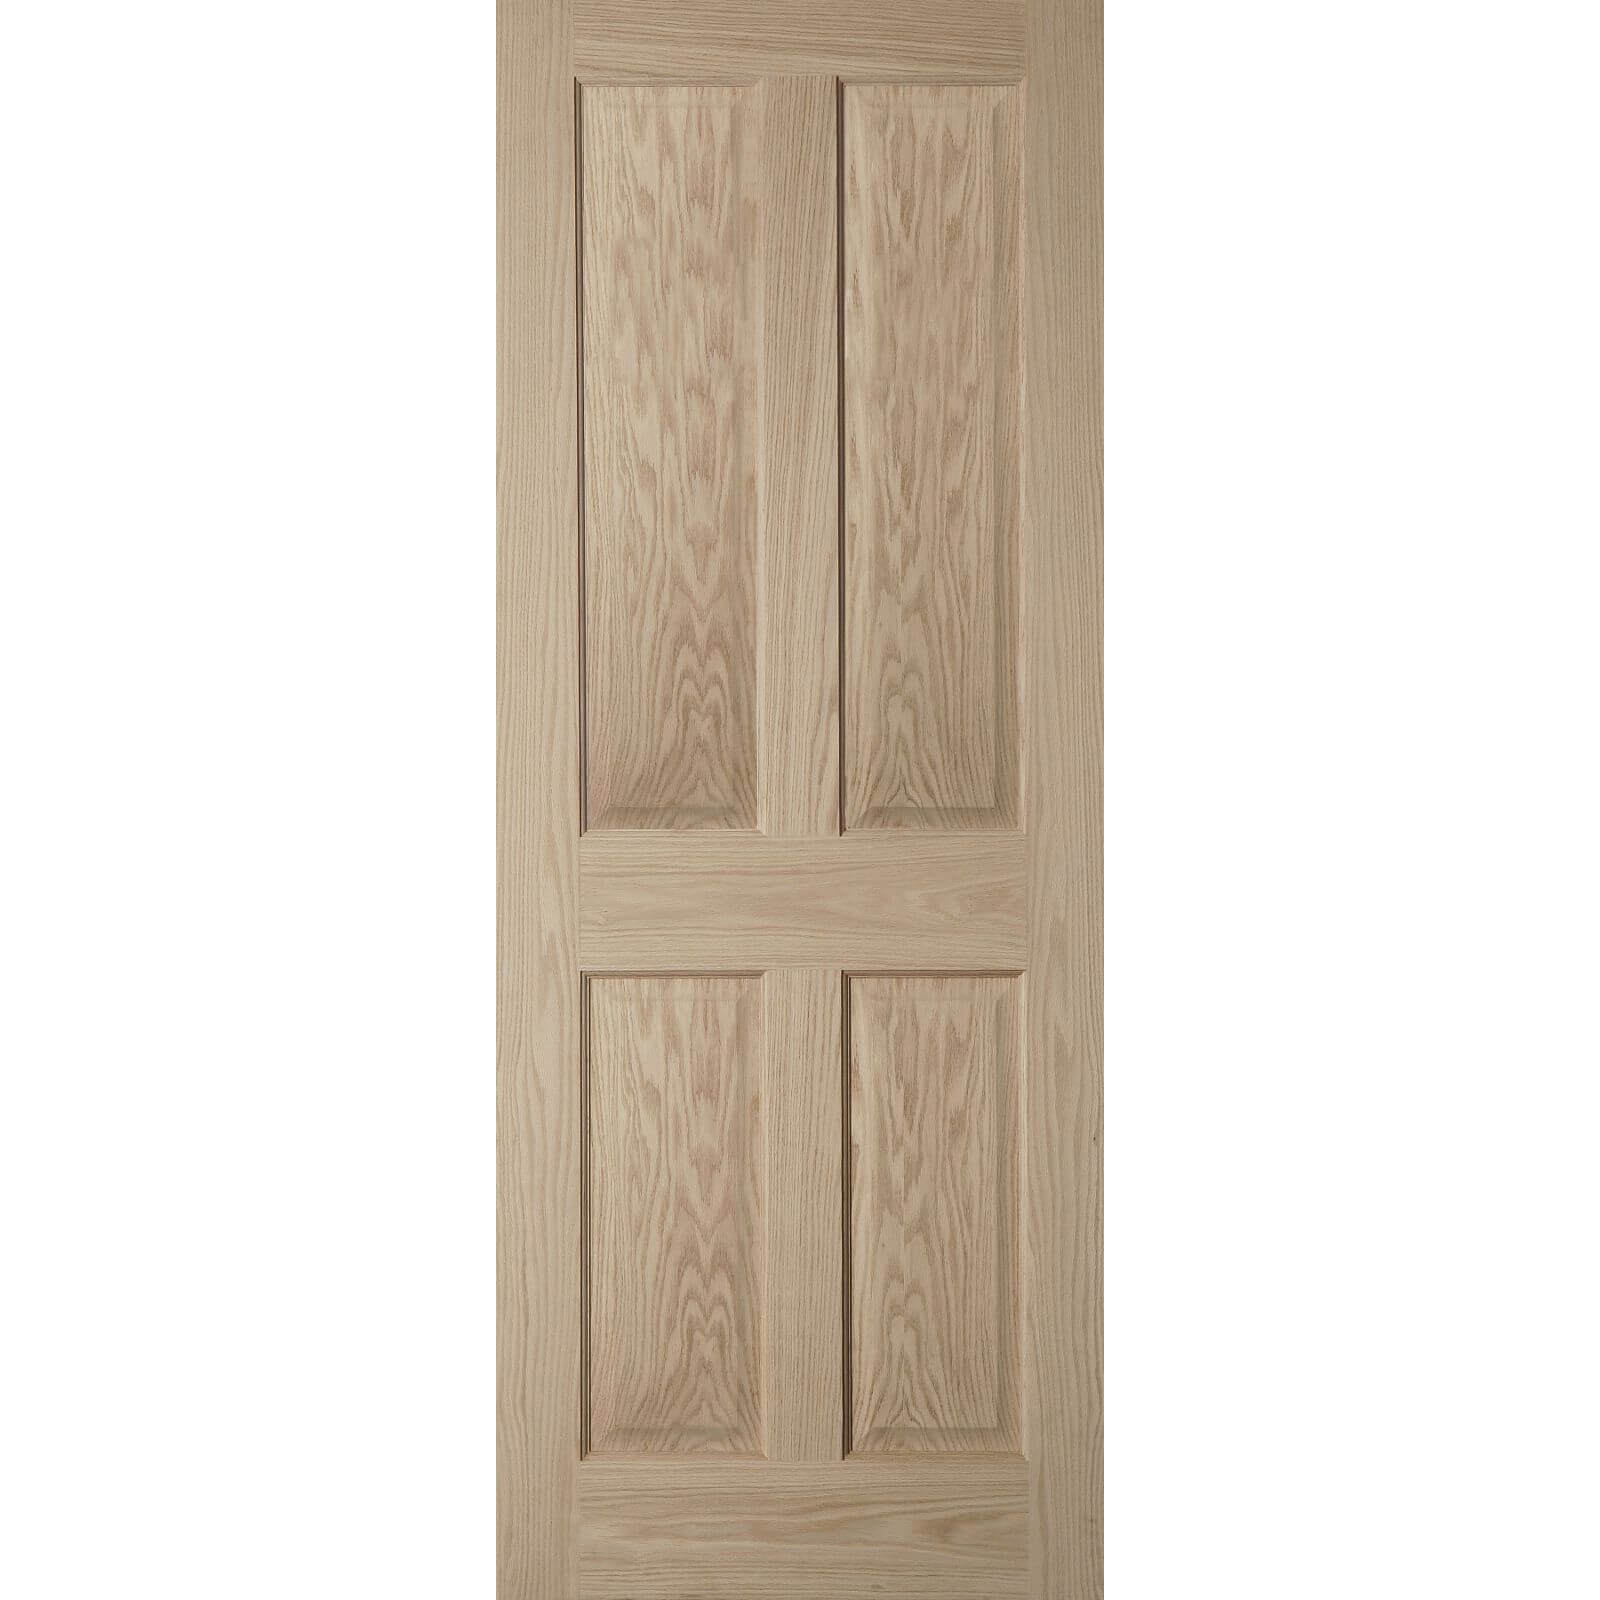 4 Panel Oak Veneer Internal Door - 610mm Wide